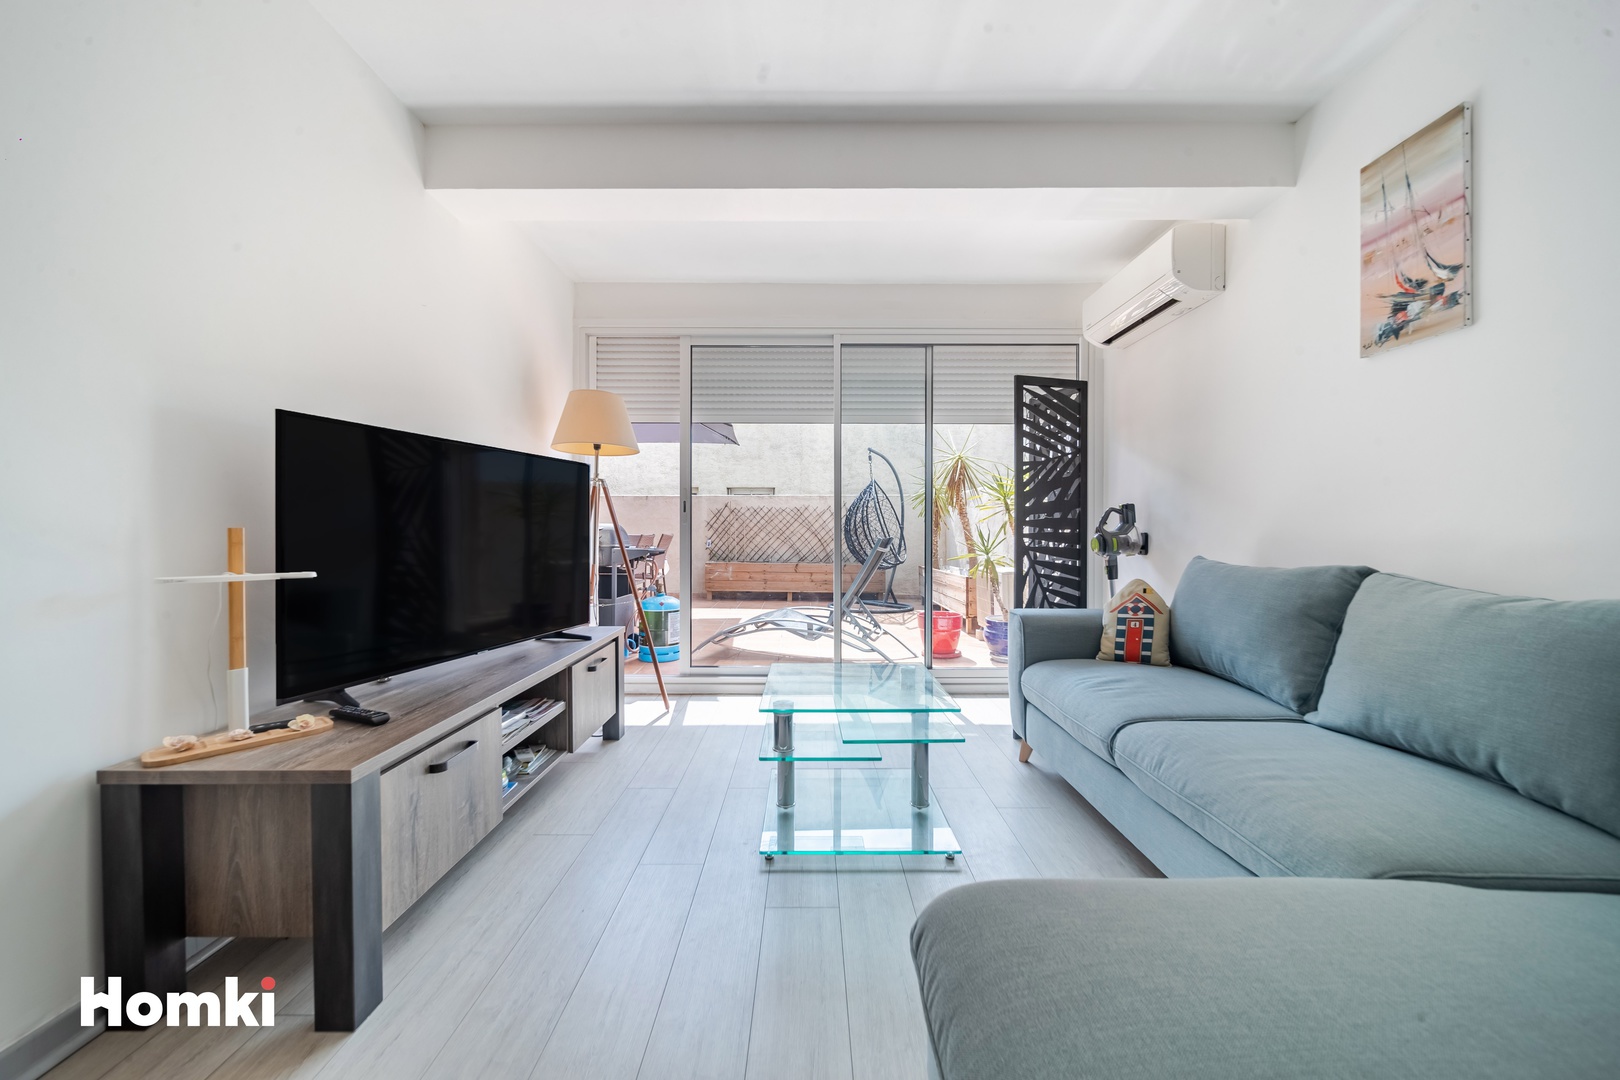 Homki - Vente Appartement  de 85.0 m² à Agde 34300